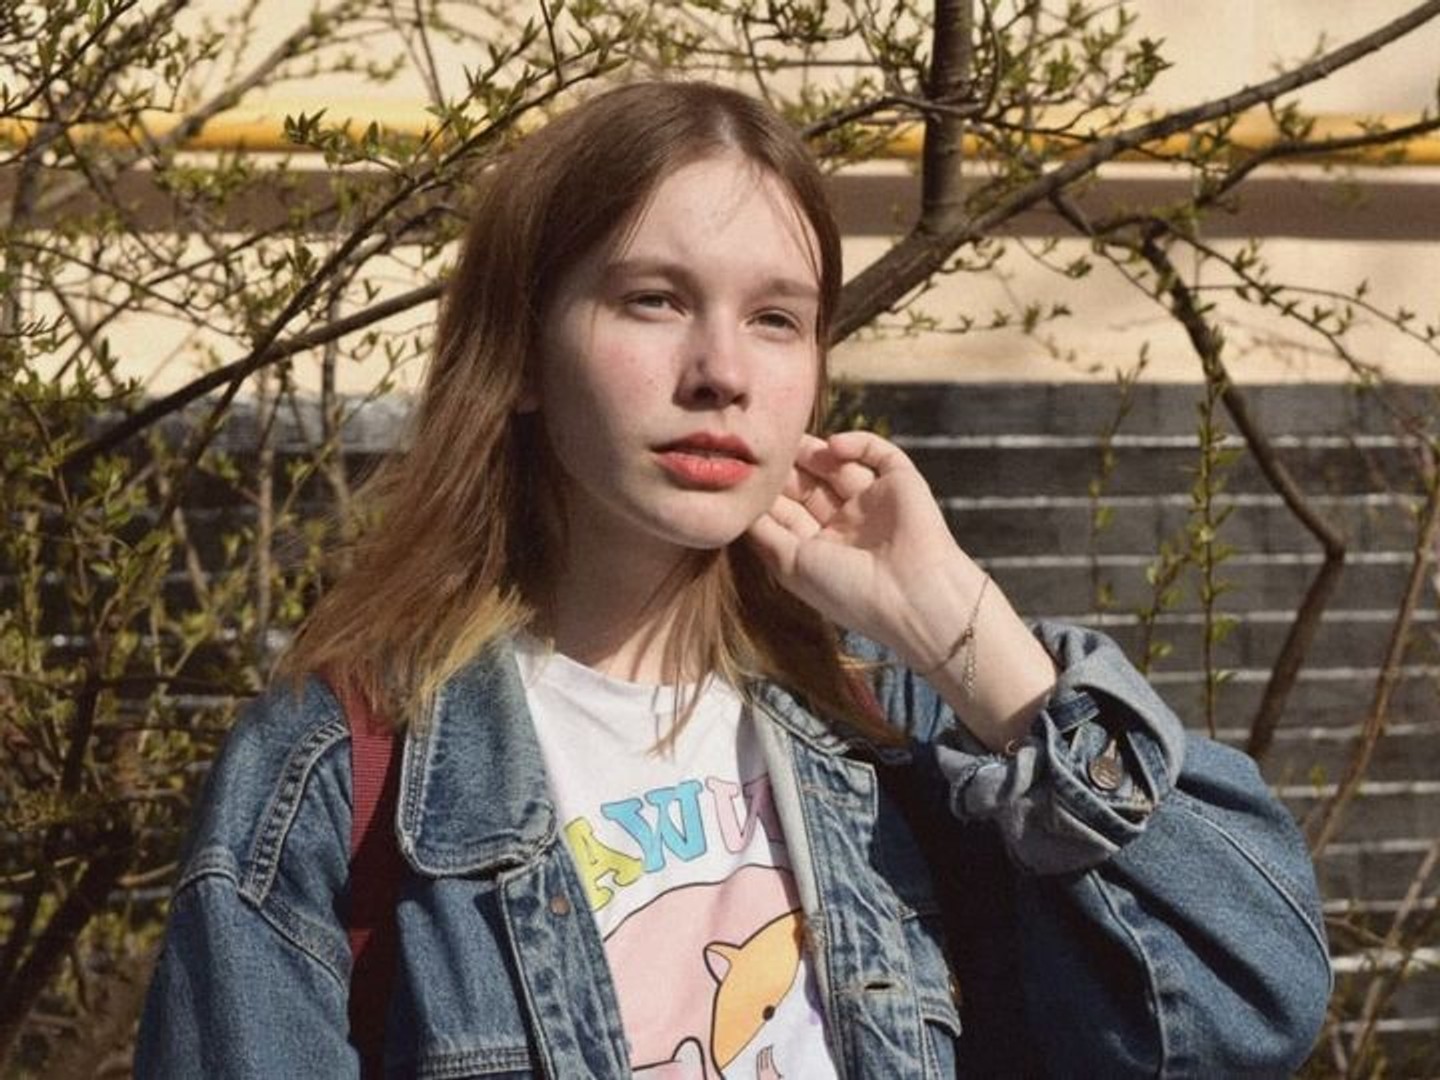 Басманний суд Москви відправив 20-річну студентку ВШЕ Марію Платонову під домашній арешт